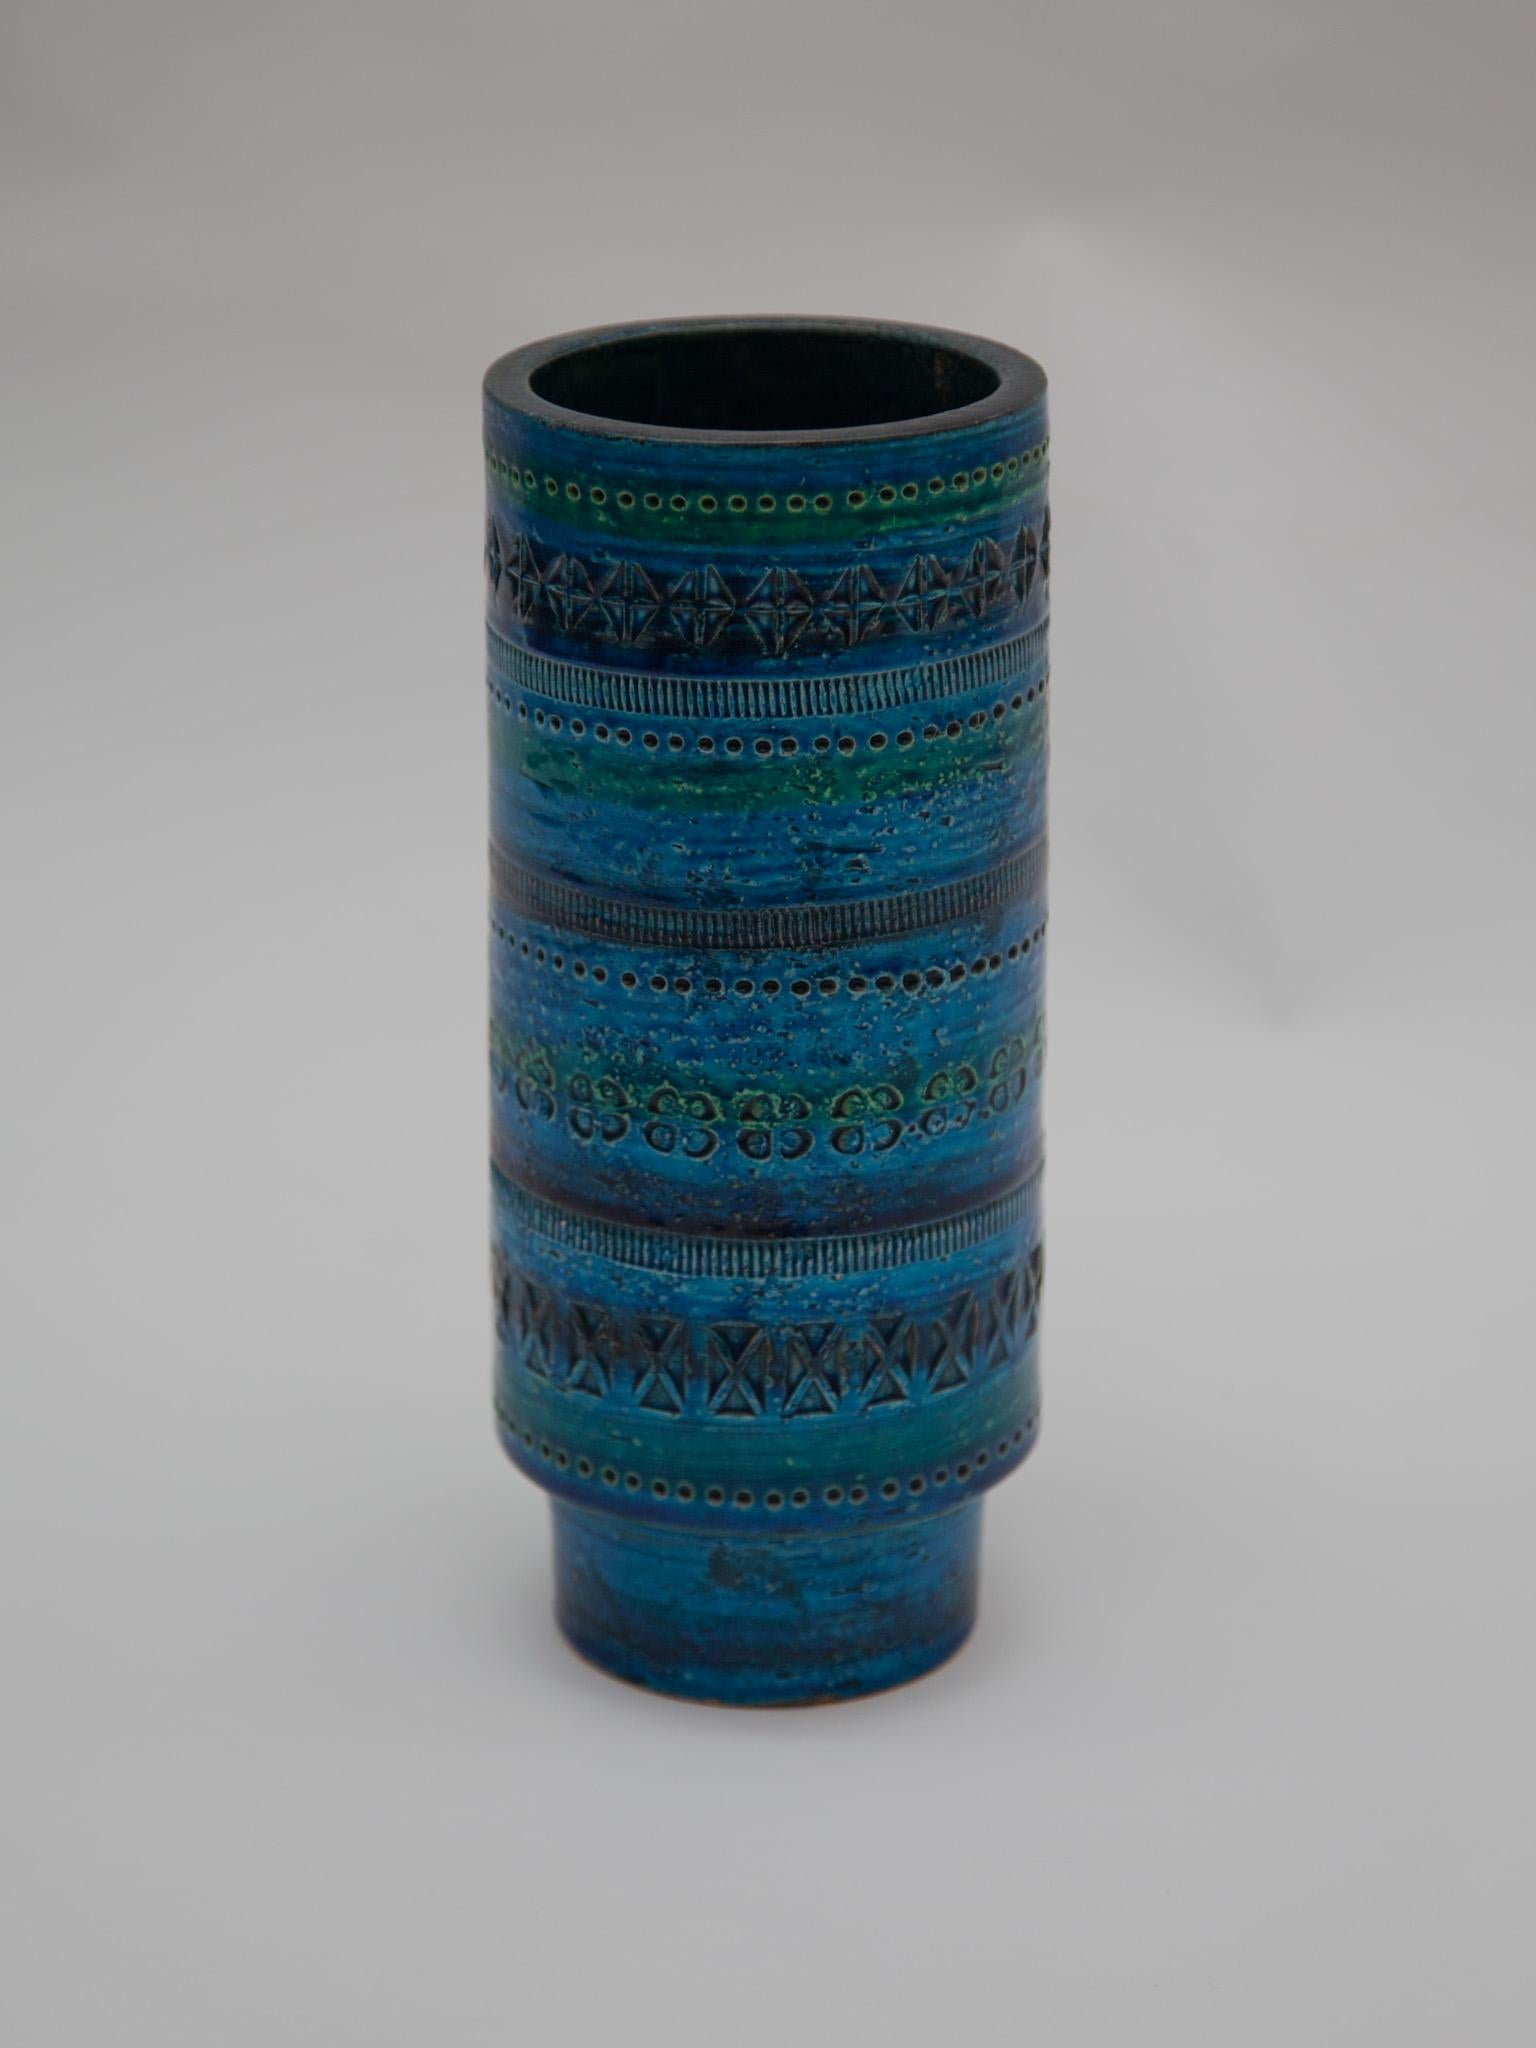 Vase rond en céramique émaillée bleue, Italie, années 1950-1960. Conçu par Aldo Londi et fabriqué par Bitossi. Fabriqué à la main en Italie avec un design géométrique sculpté à la main dans un turquoise vibrant et un bleu cobalt émaillé.  Très beau